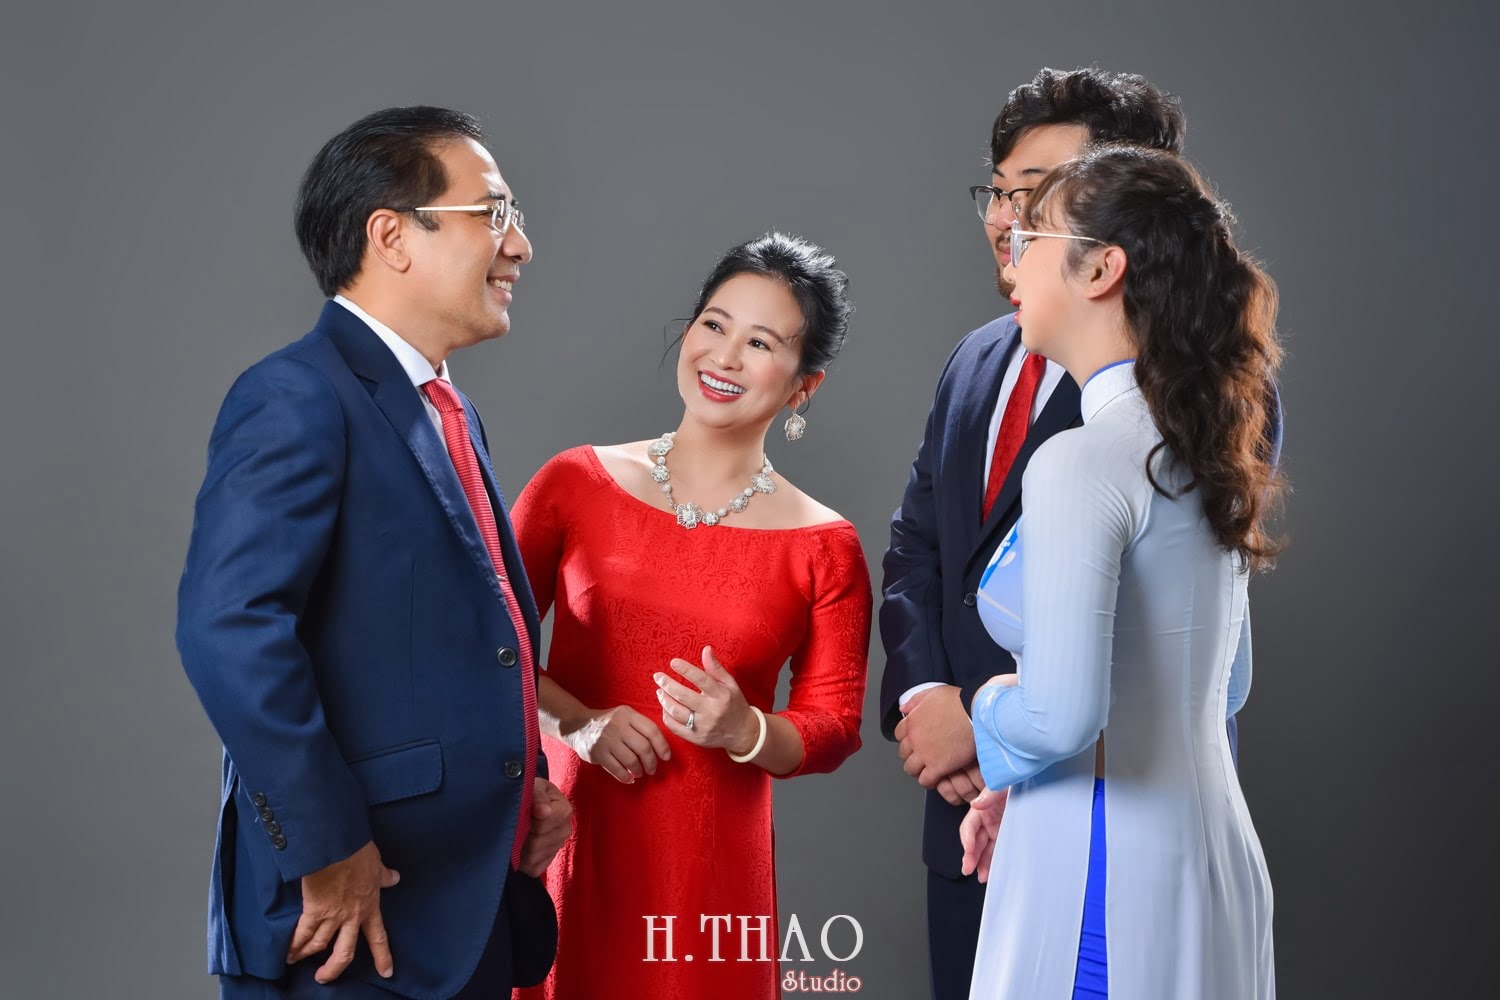 Anh gia dinh 4 nguoi 10 min - 35 kiểu ảnh gia đình 4 người đẹp & tự nhiên nhất - HThao Studio